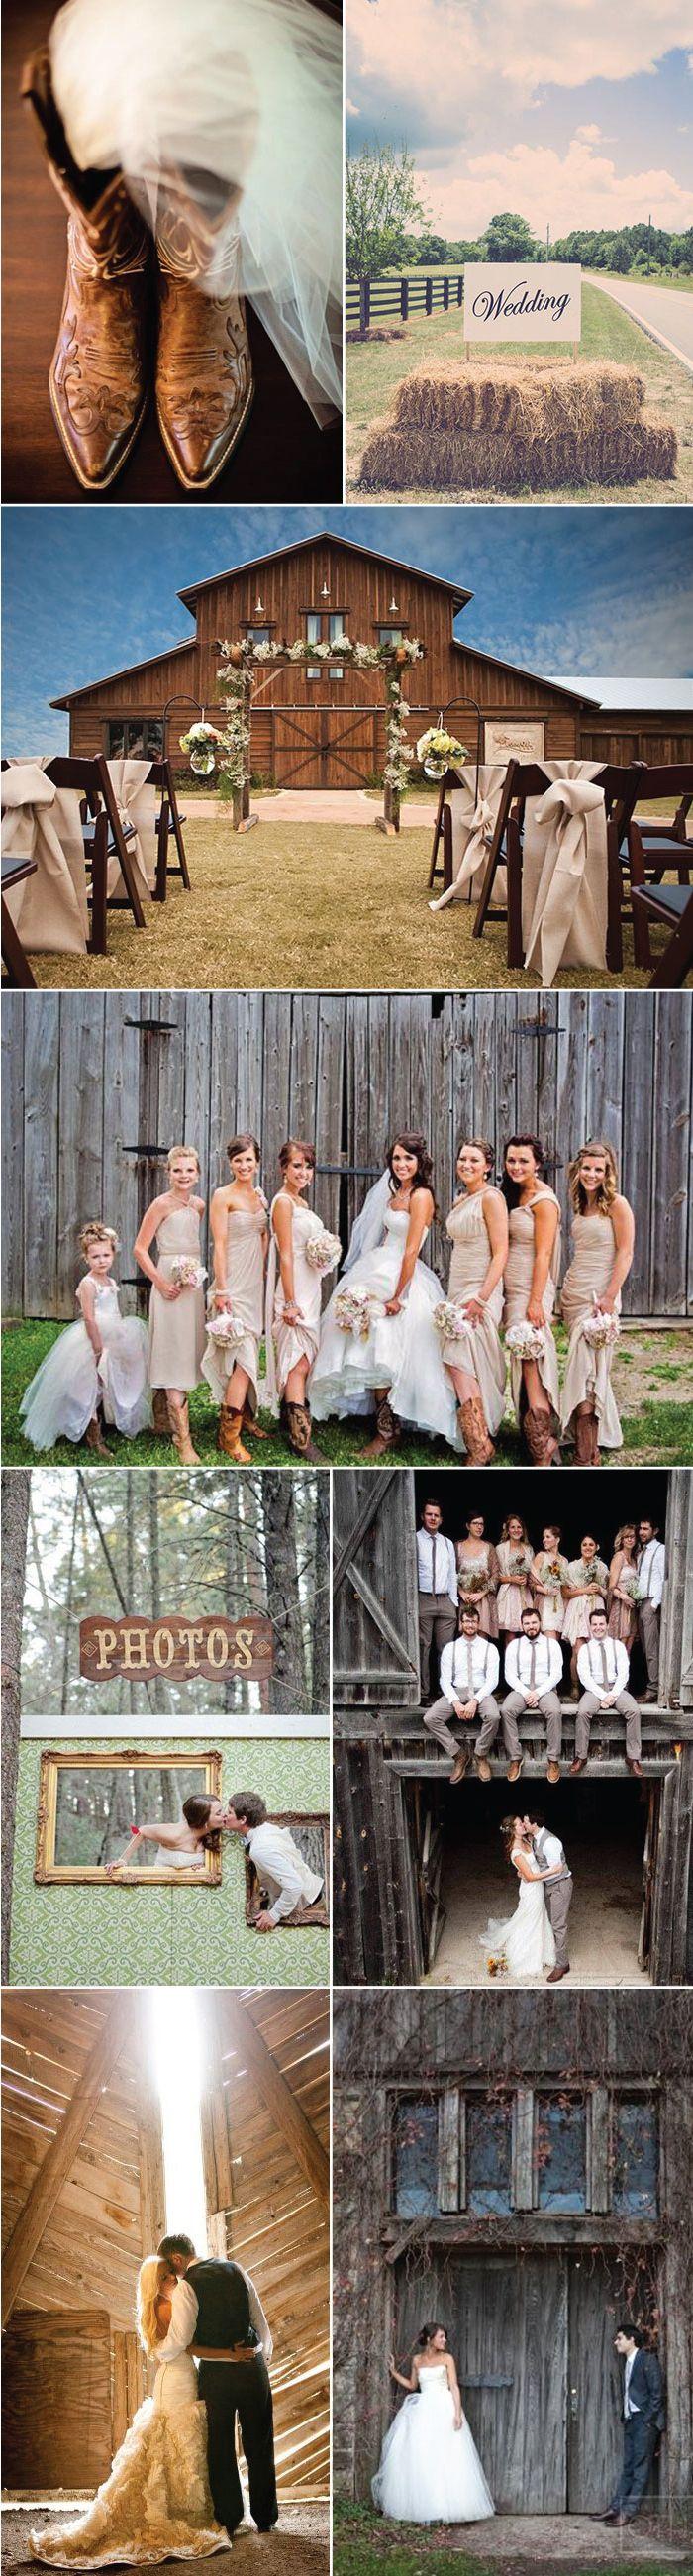 زفاف - Wedding Ideas For Barn Weddings   